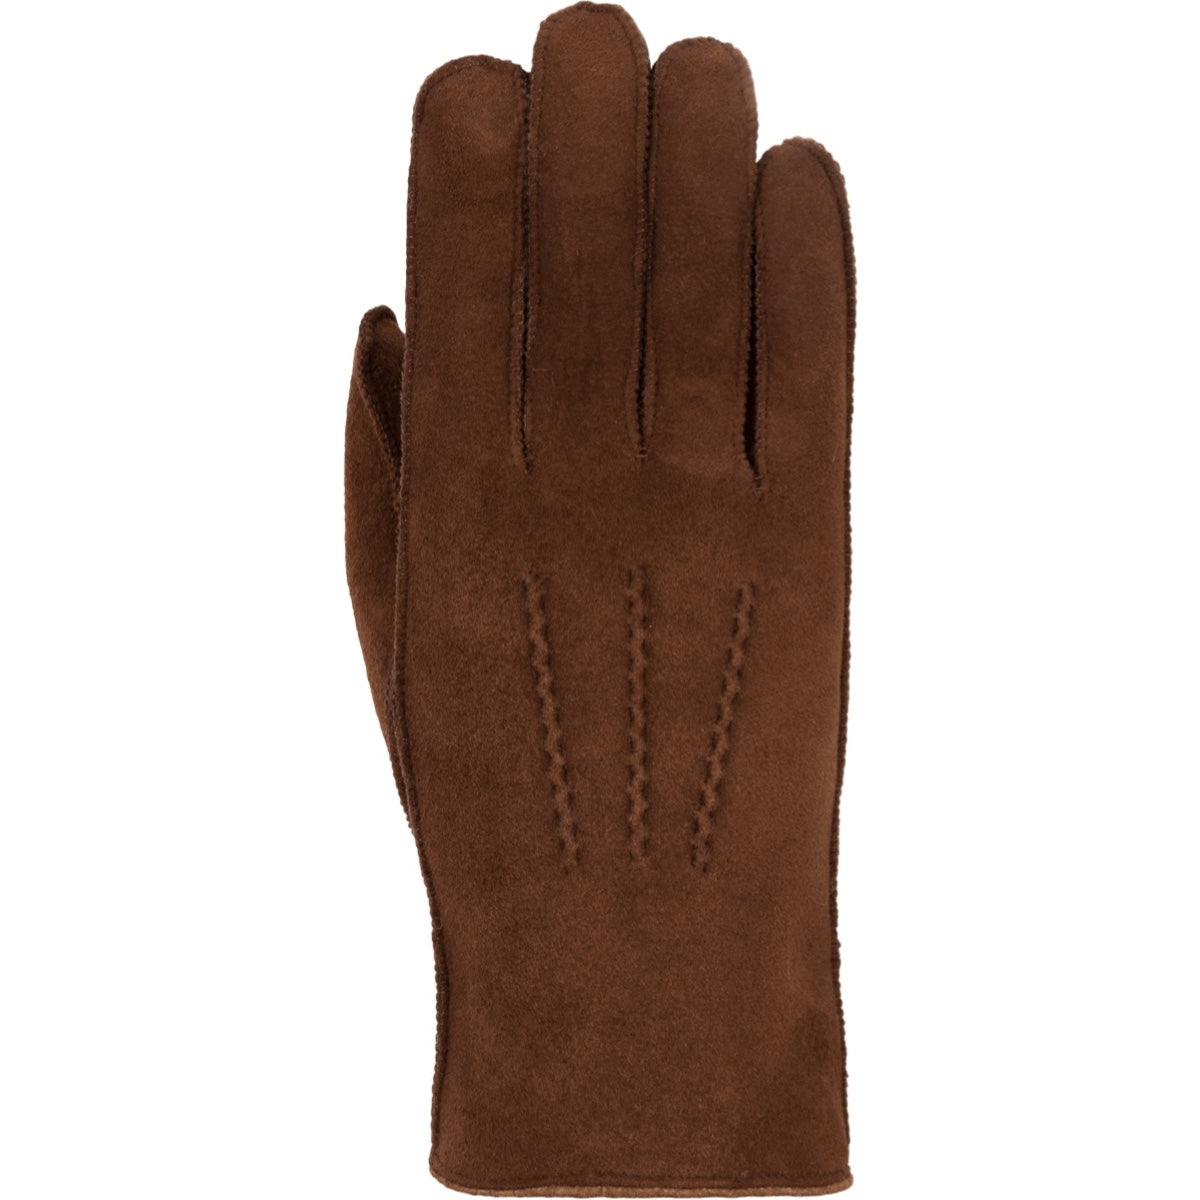 Bruine Suede Handschoenen Heren Shackleton – Schwartz & von Halen® – Premium Leren Handschoenen - 1